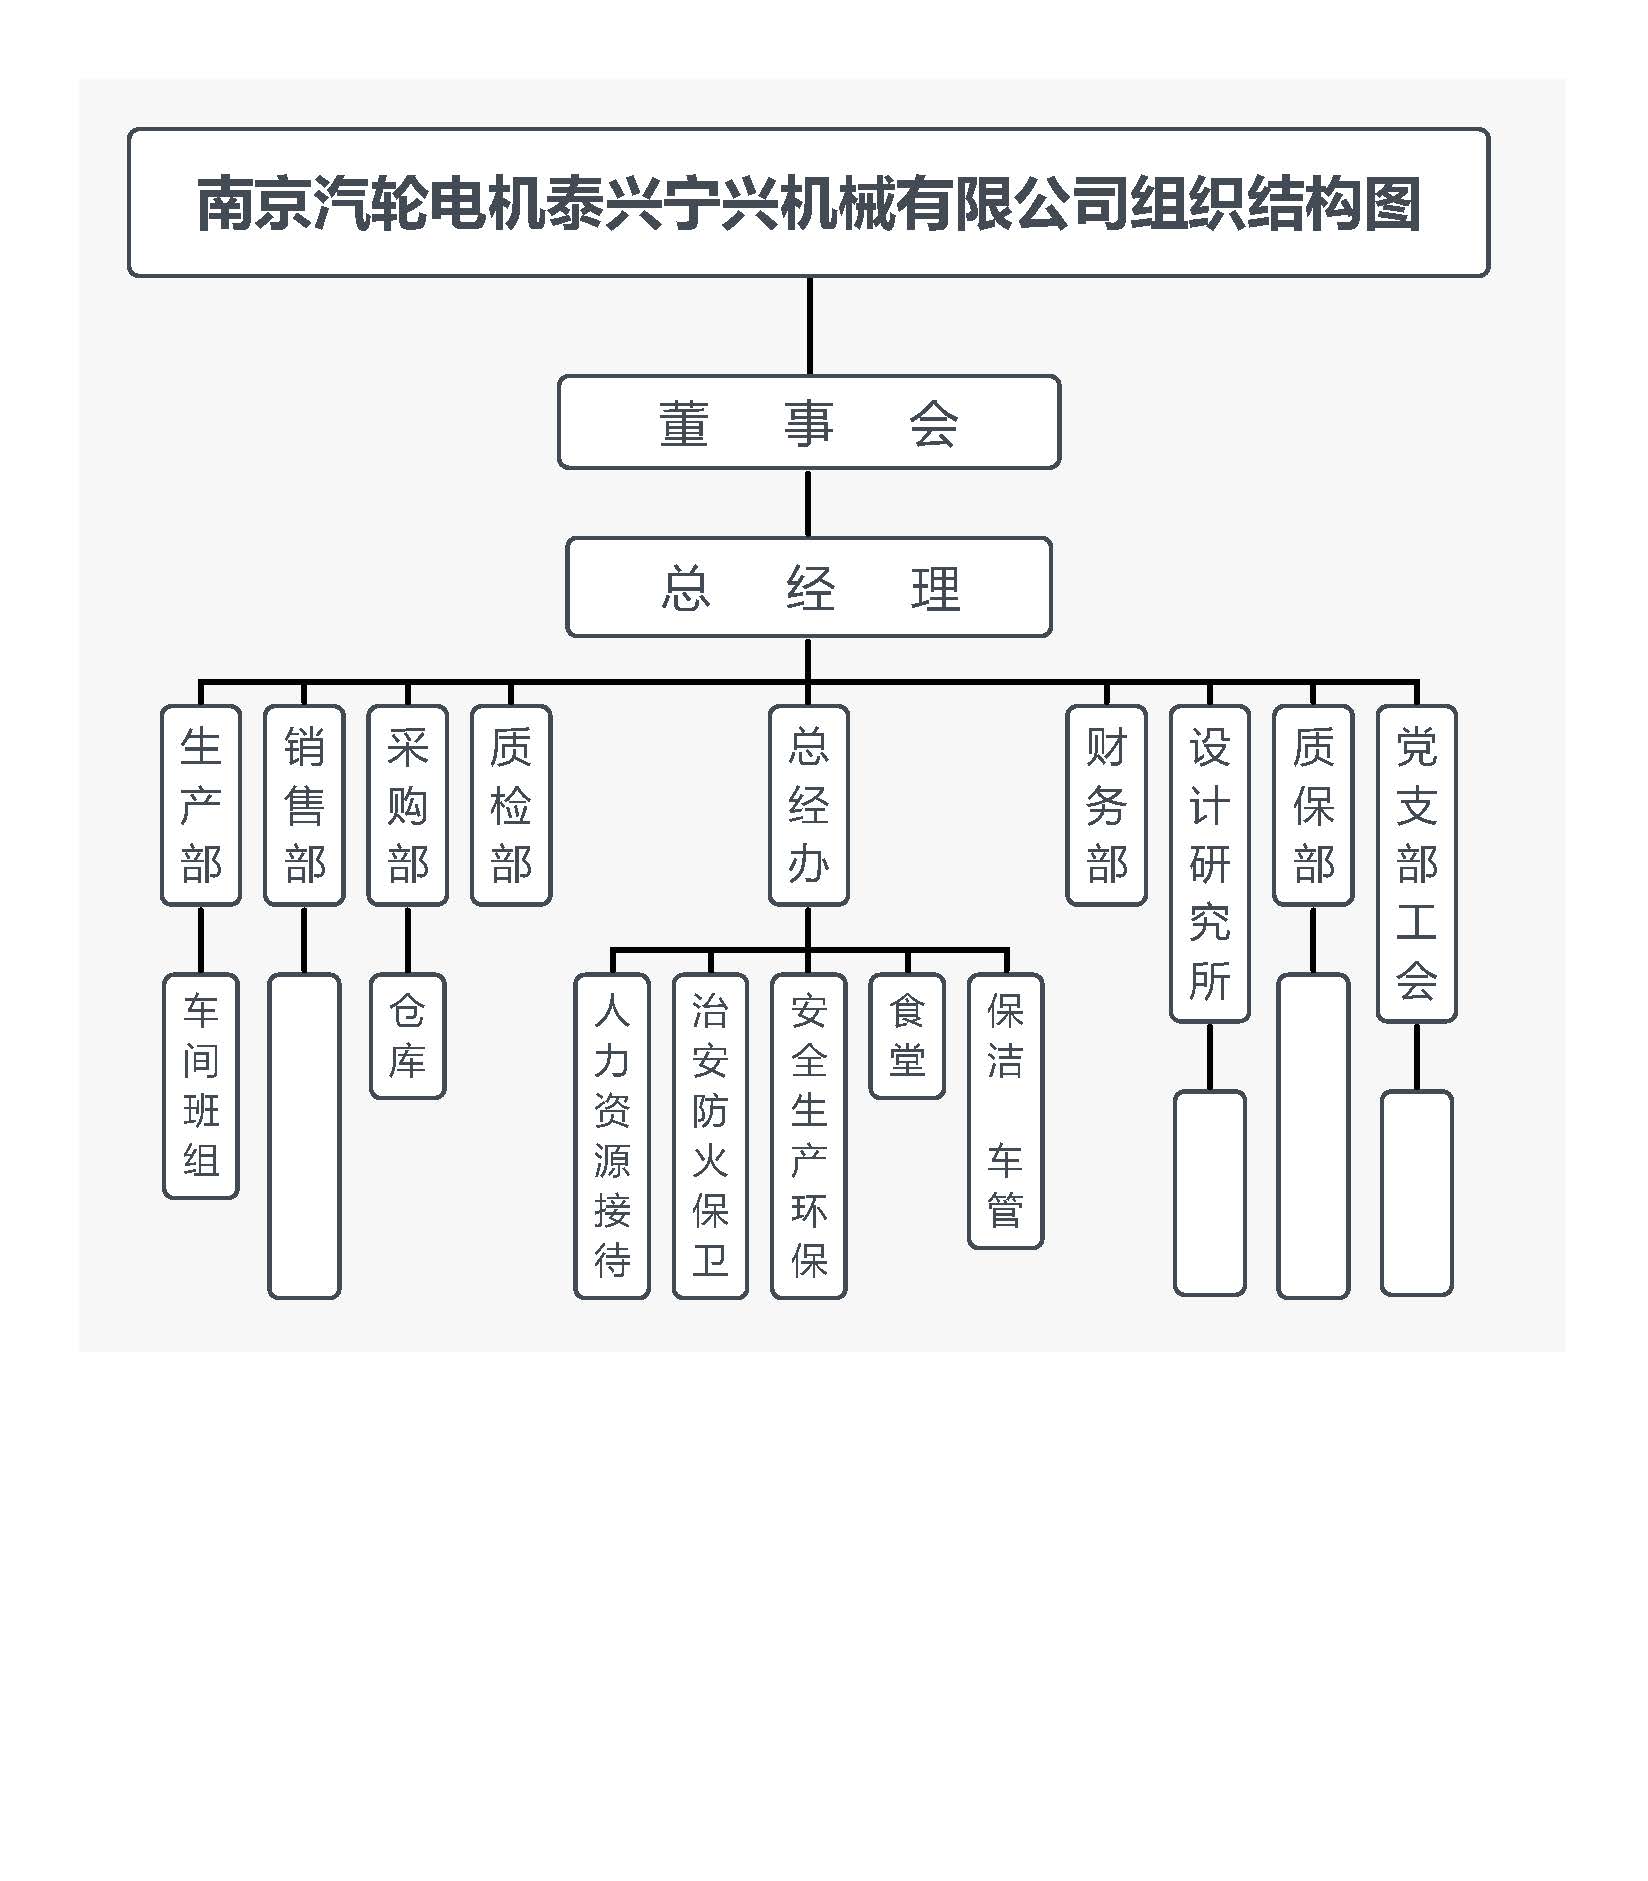 南京汽轮电机泰兴宁兴机械有限公司组织结构图20210317曹晨.jpg